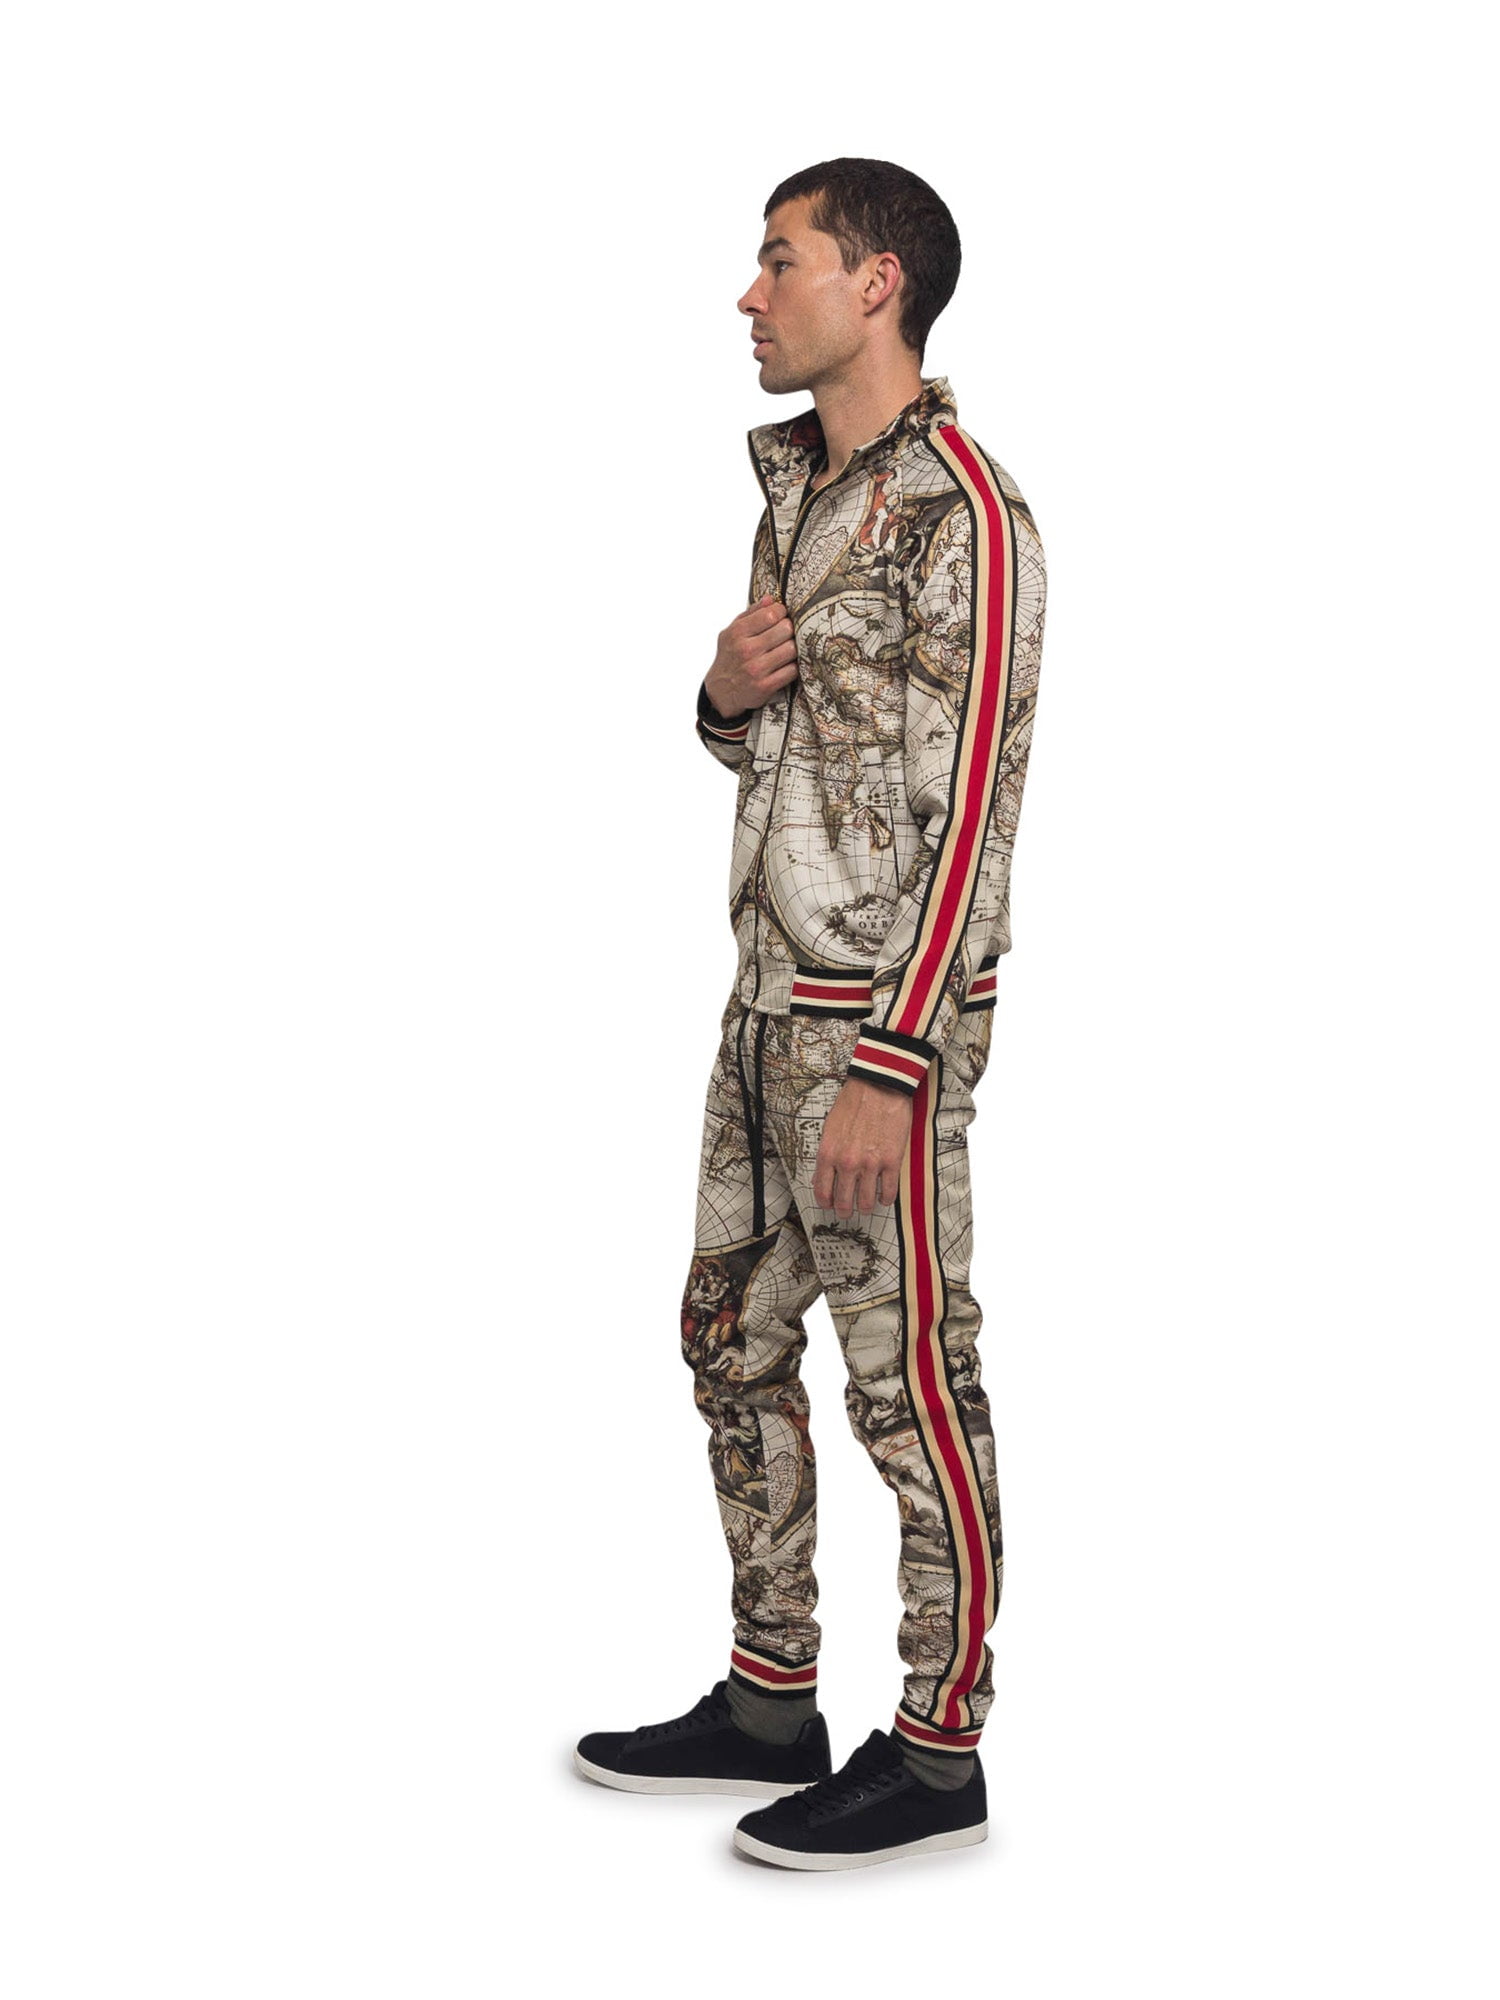 Dader Wiskundig Tegenover G-Style USA Men's Jungle Tiger G Stripe Track Suit Set ST808 - Camo -  Medium - Walmart.com